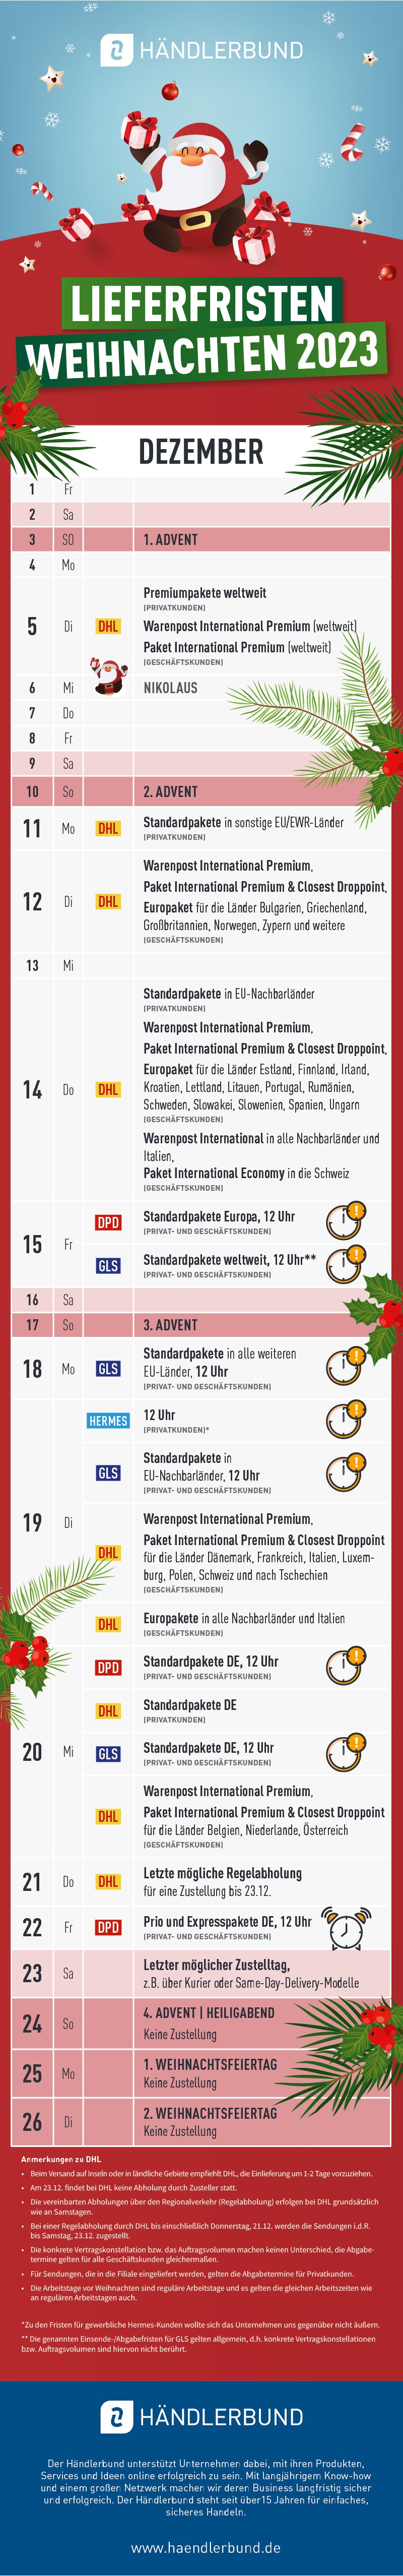 Infografik Lieferfristen für Weihnachten der Paketdienste